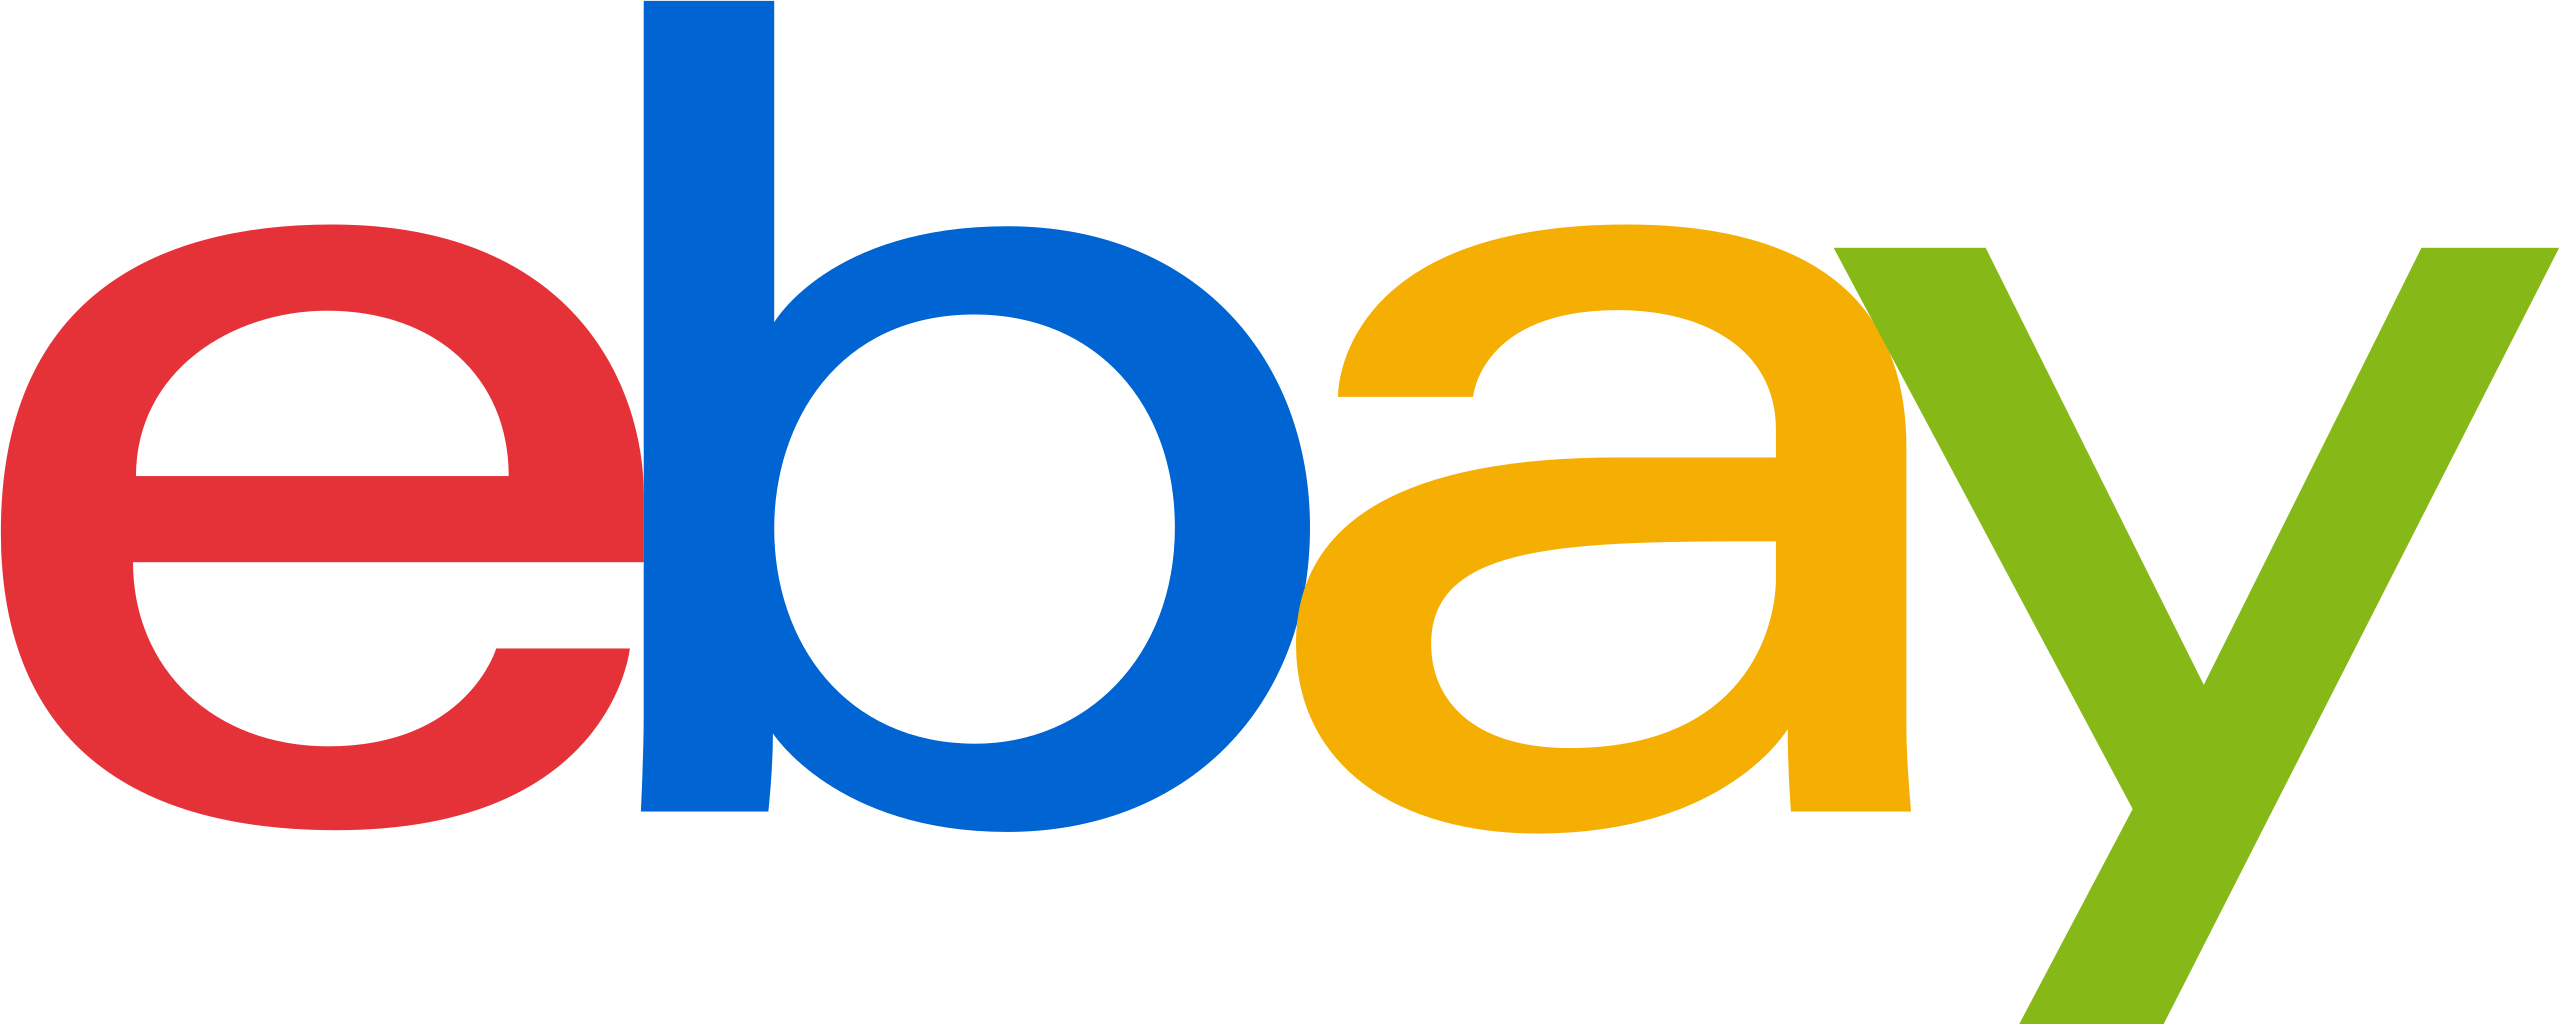 Image of the Ebay Logo